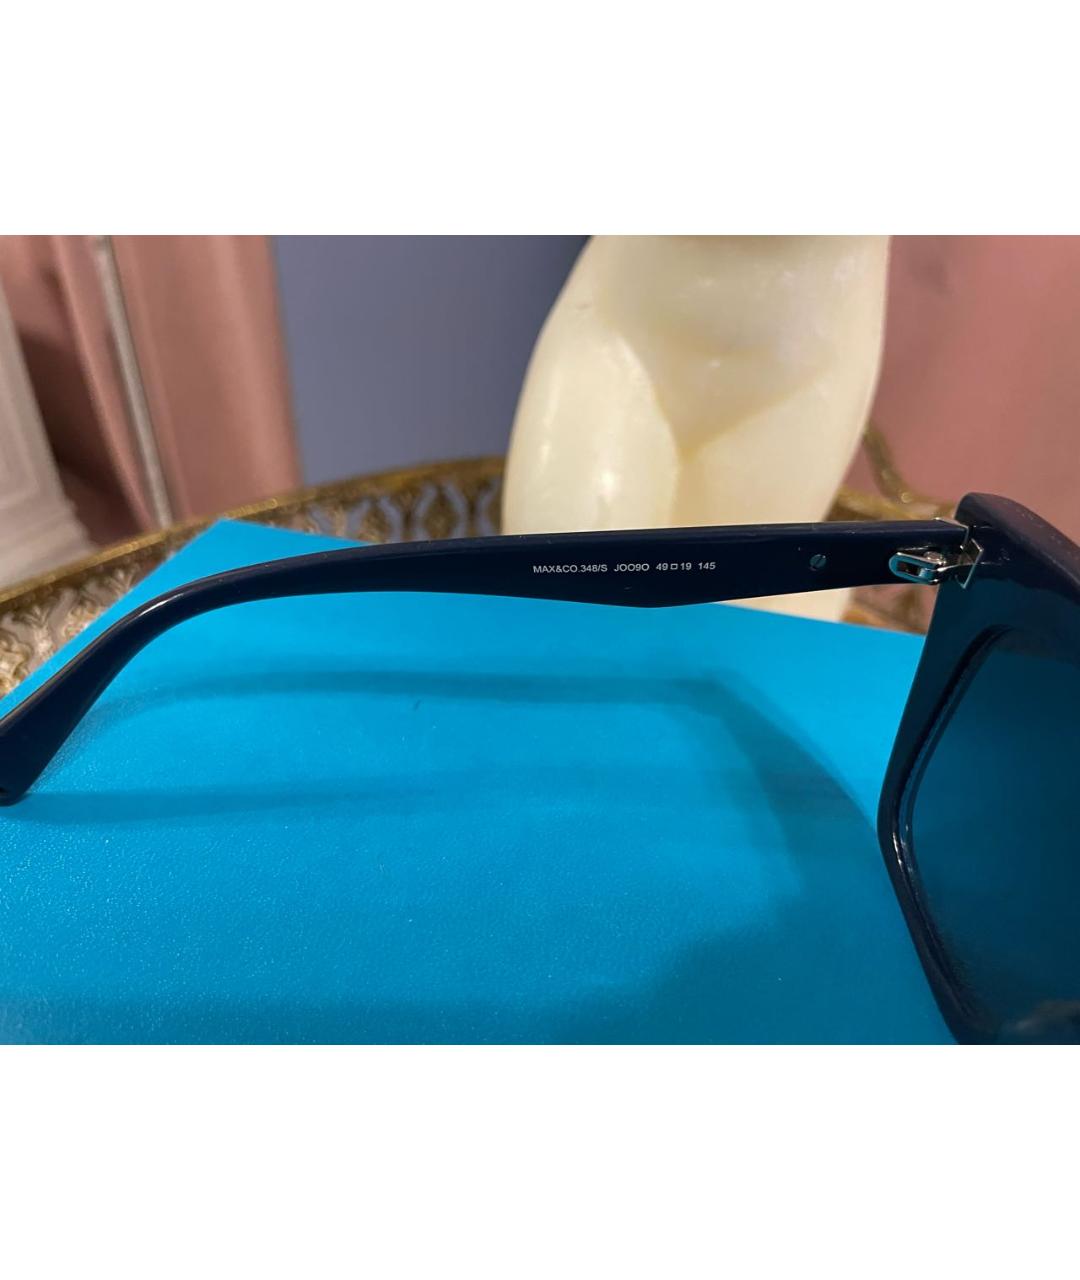 MAX&CO Синие пластиковые солнцезащитные очки, фото 3